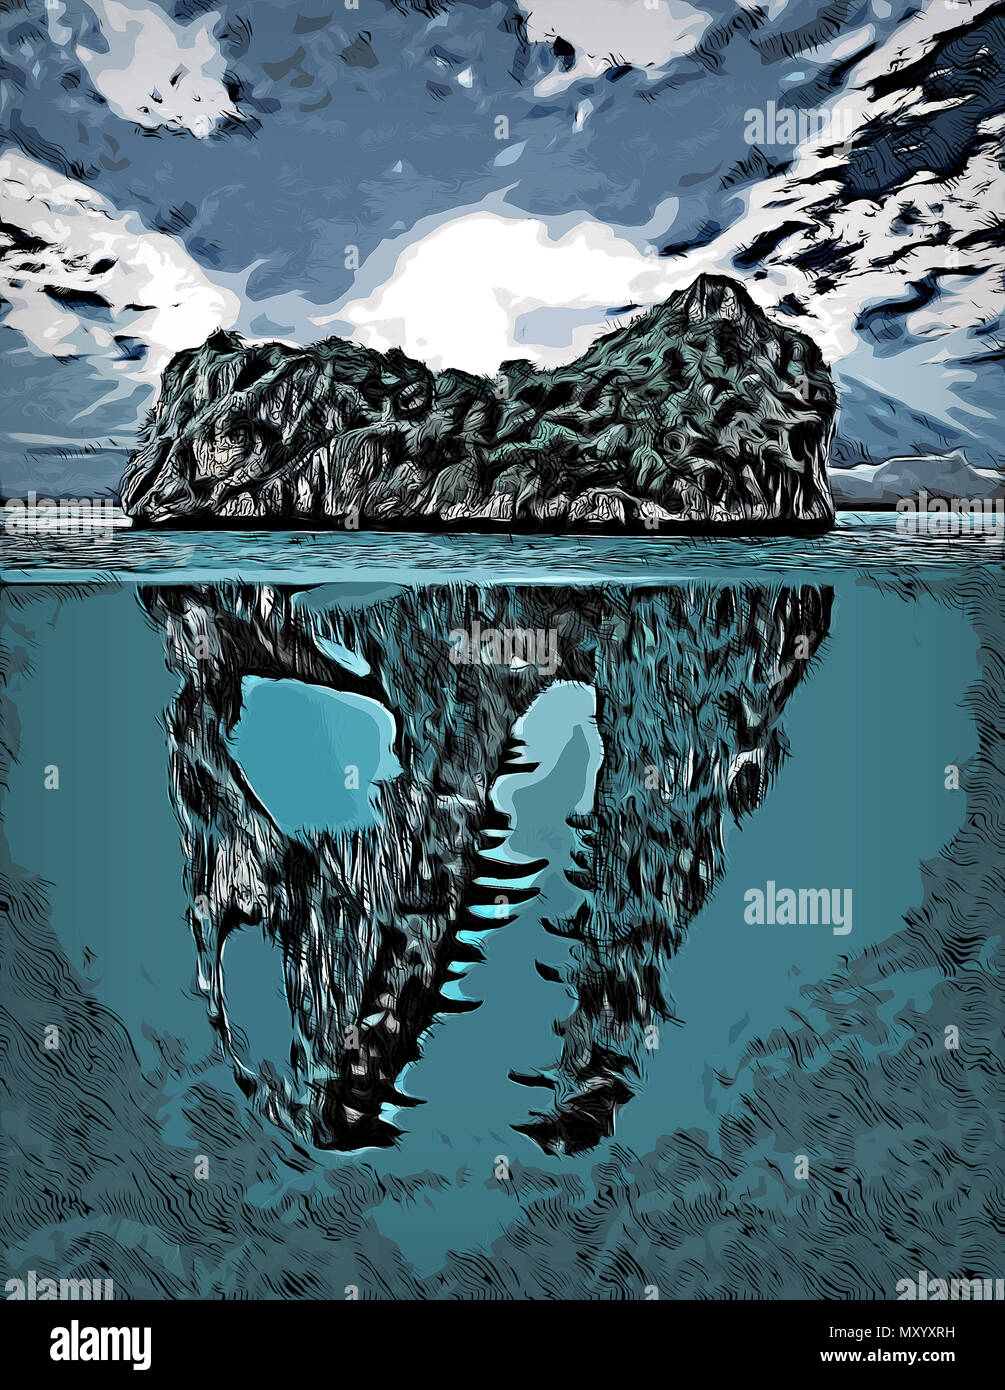 Illustration d'une dangereuse à l'île flottante qui est engloutie en partie avec vue également à une scène sous-marine où le fond ressemble à un skul Banque D'Images